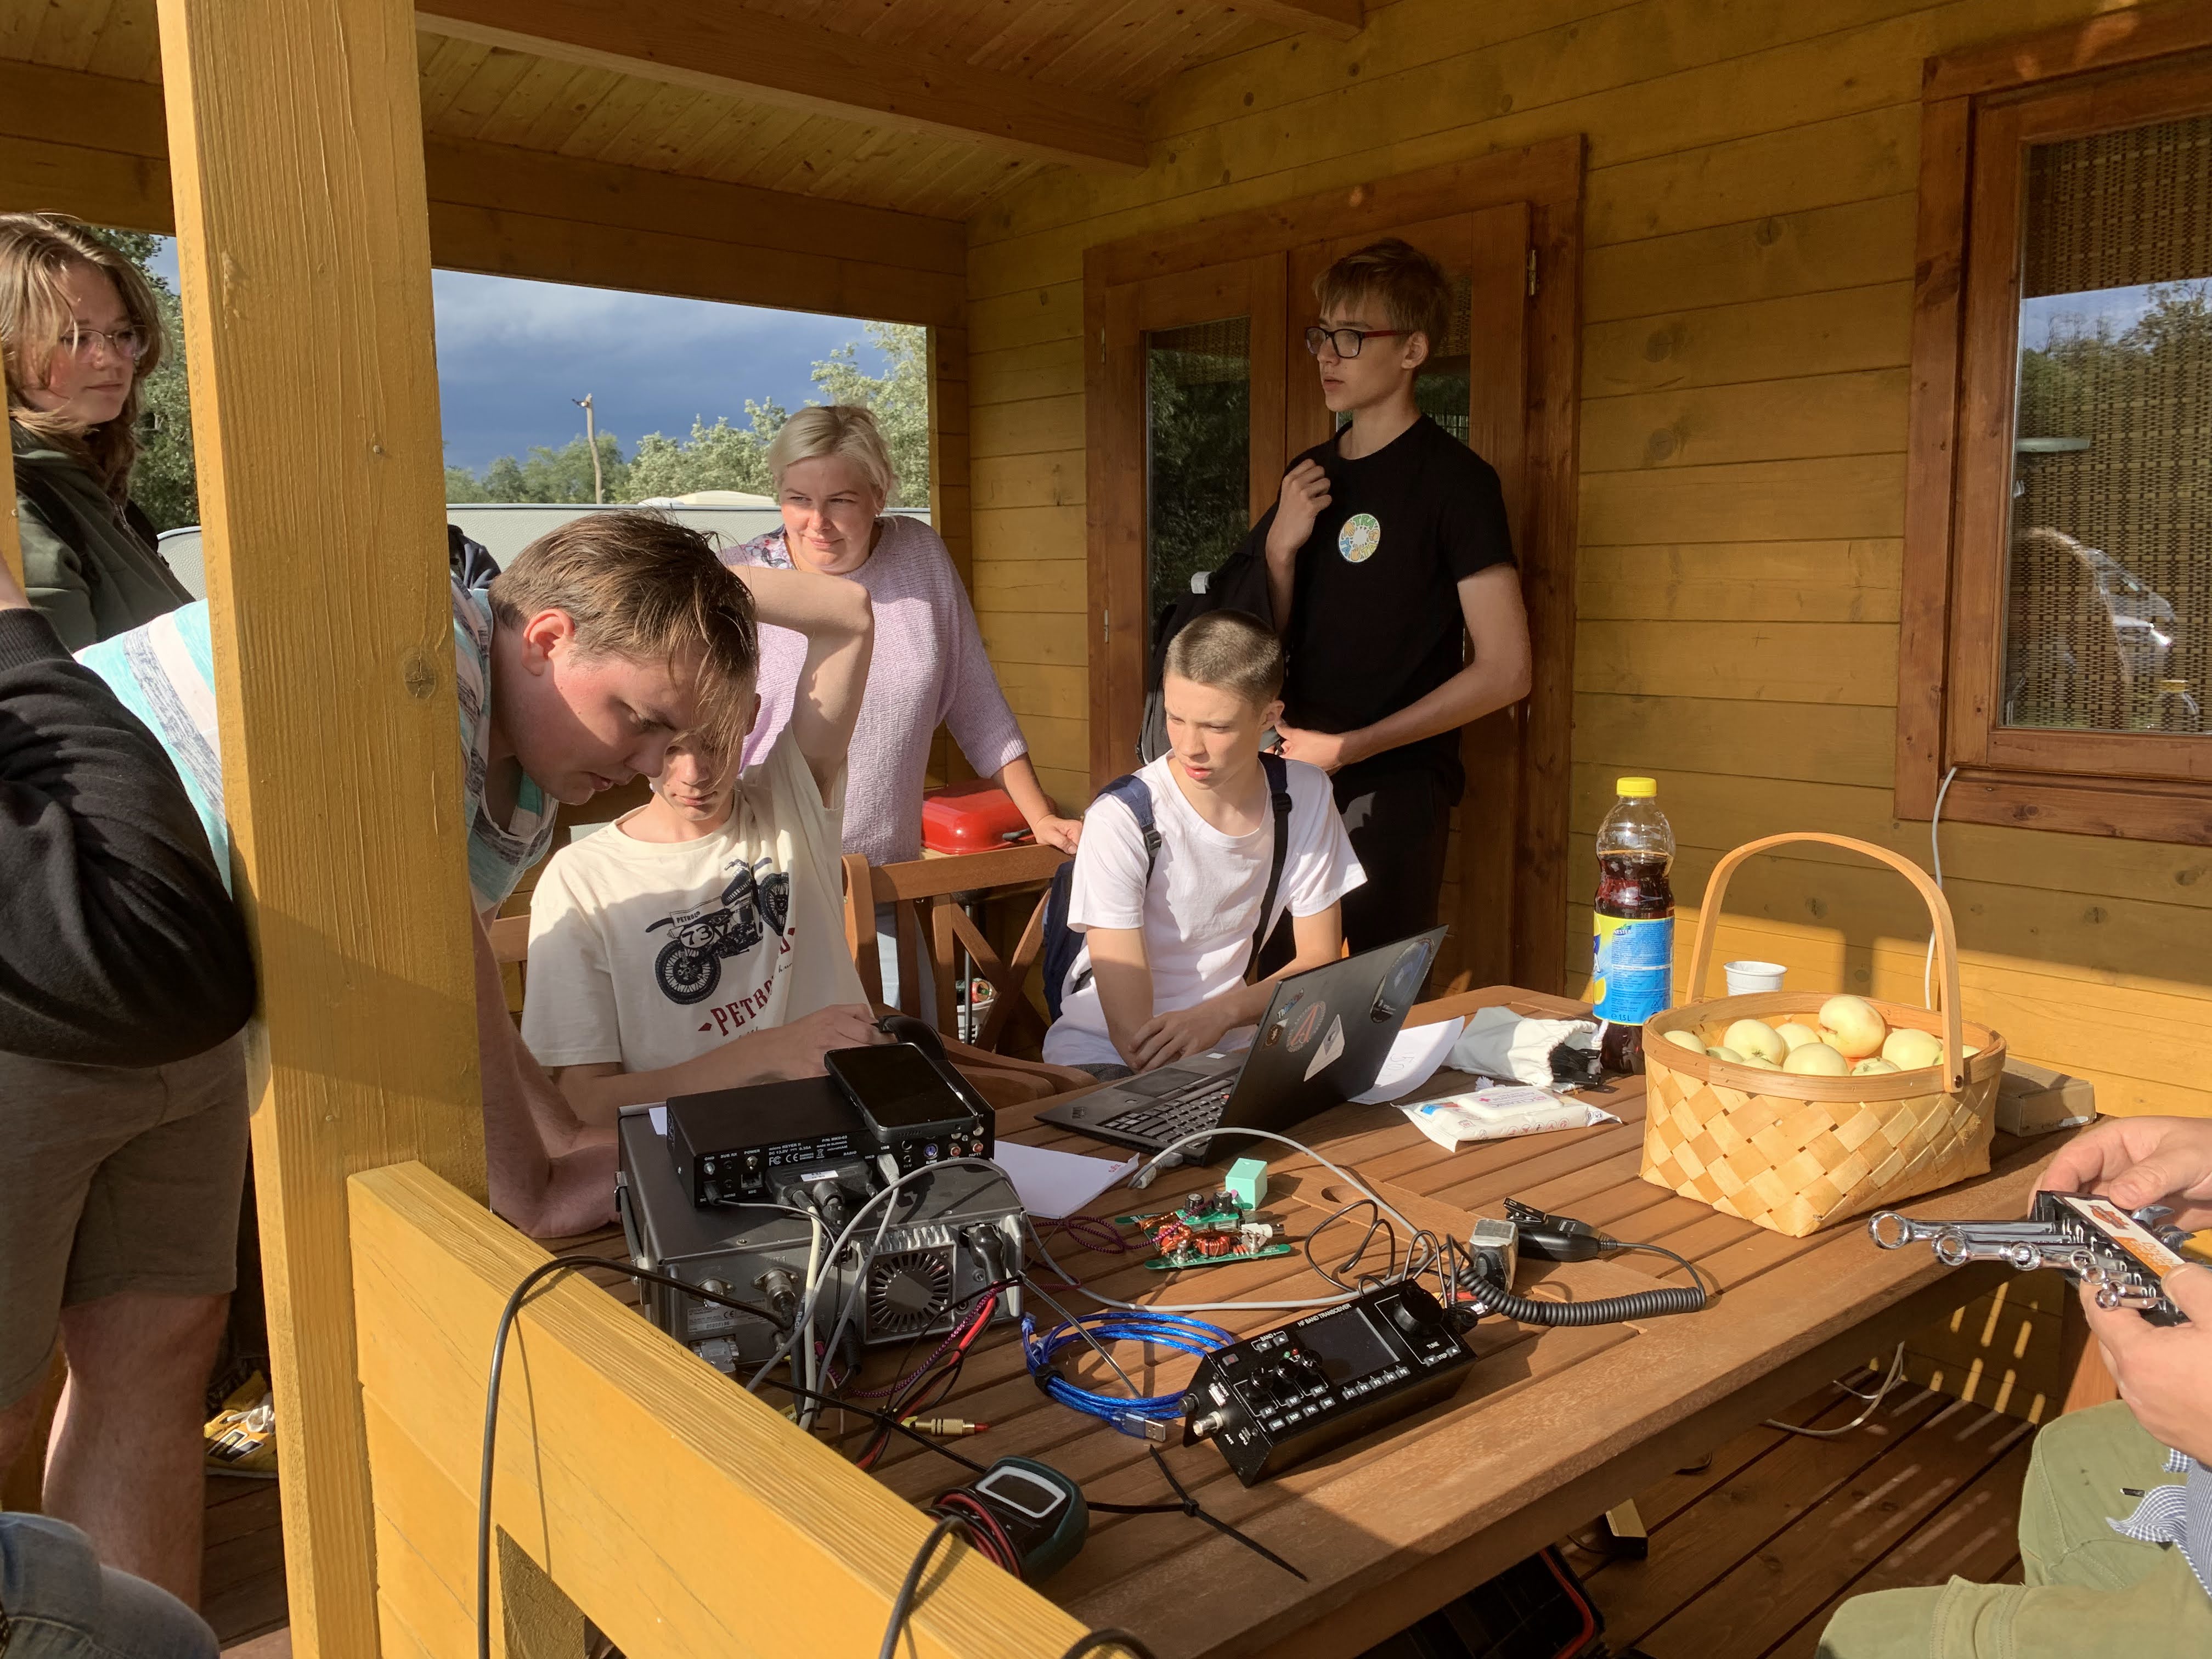 VU radijo klubo sąskrydžio stotis, du mokiniai ruošiasi atlikti ryšius radijo aparatu, klubo narys jiems padeda